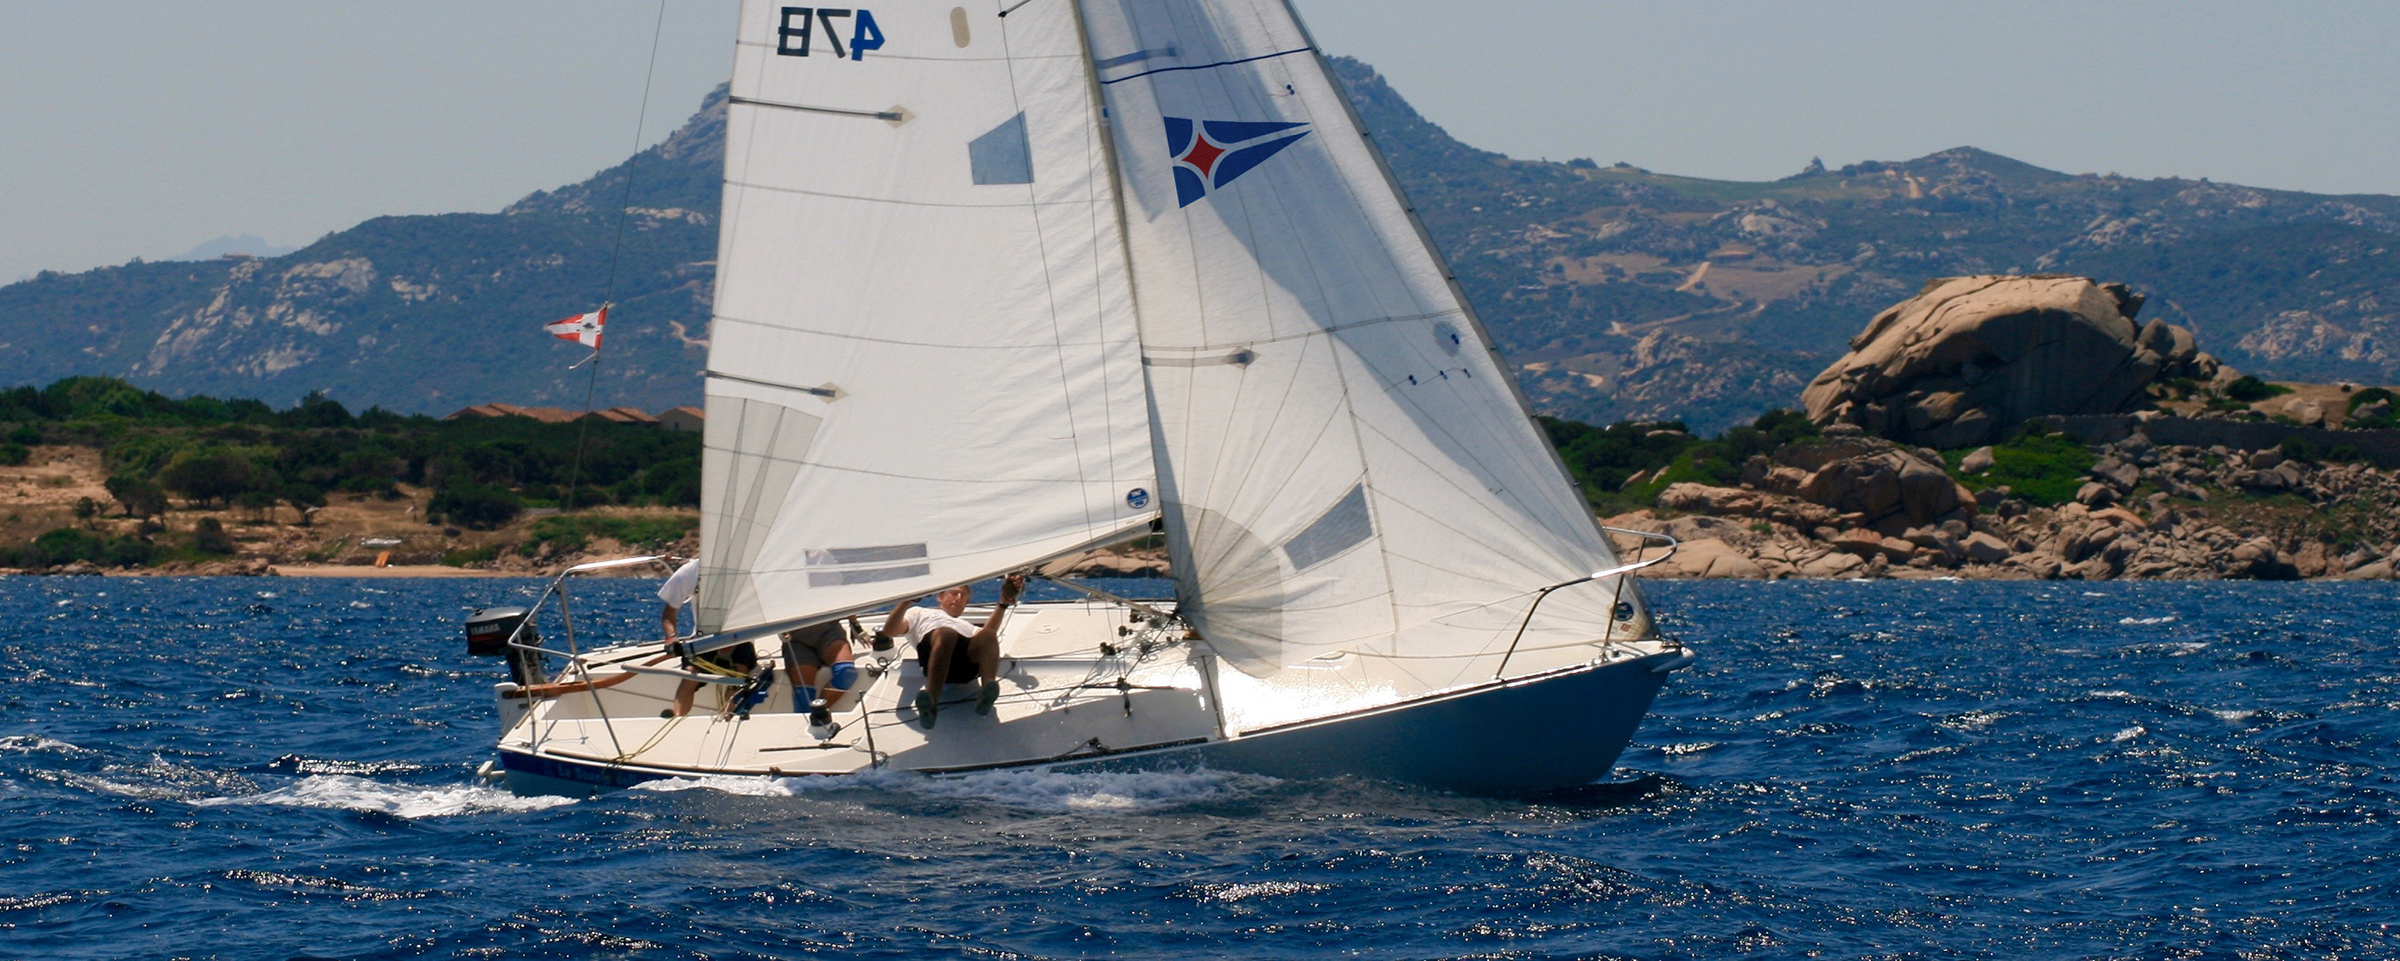 YCCS Sailing School - 1 - Yacht Club Costa Smeralda